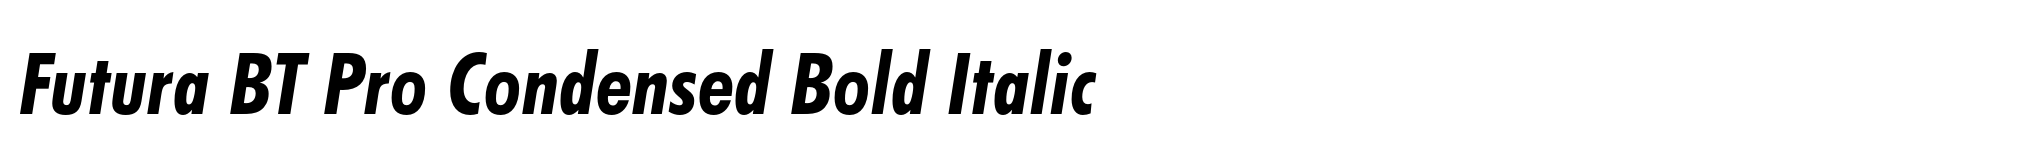 Futura BT Pro Condensed Bold Italic image